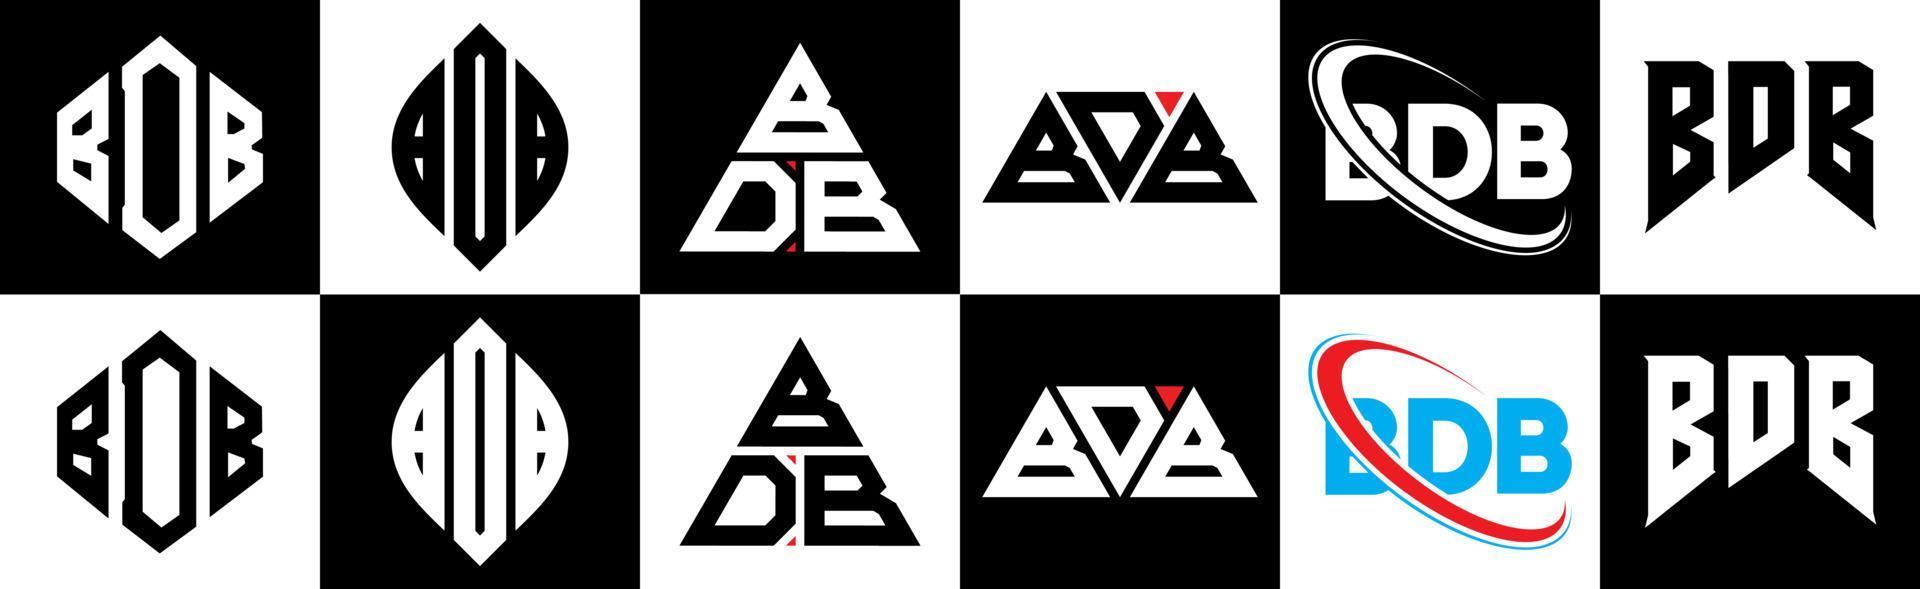 design de logotipo de letra bdb em estilo seis. polígono bdb, círculo, triângulo, hexágono, estilo plano e simples com logotipo de carta de variação de cor preto e branco definido em uma prancheta. logotipo minimalista e clássico do bdb vetor